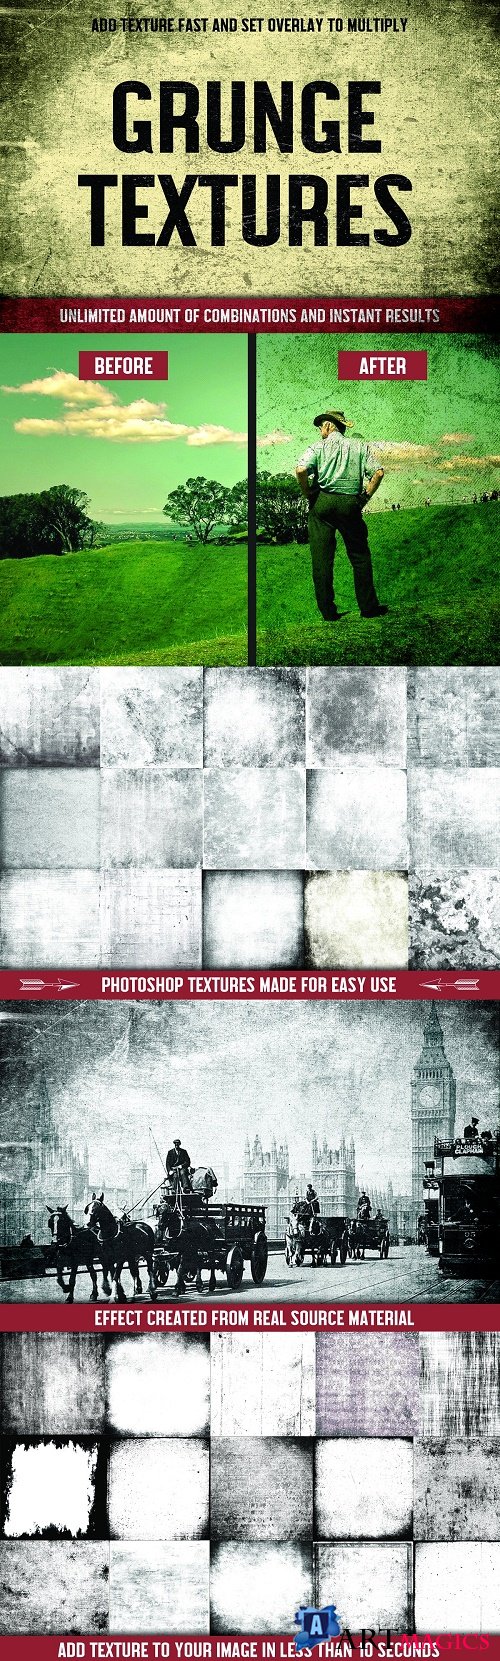 100 Grunge Photoshop Textures - 3894503